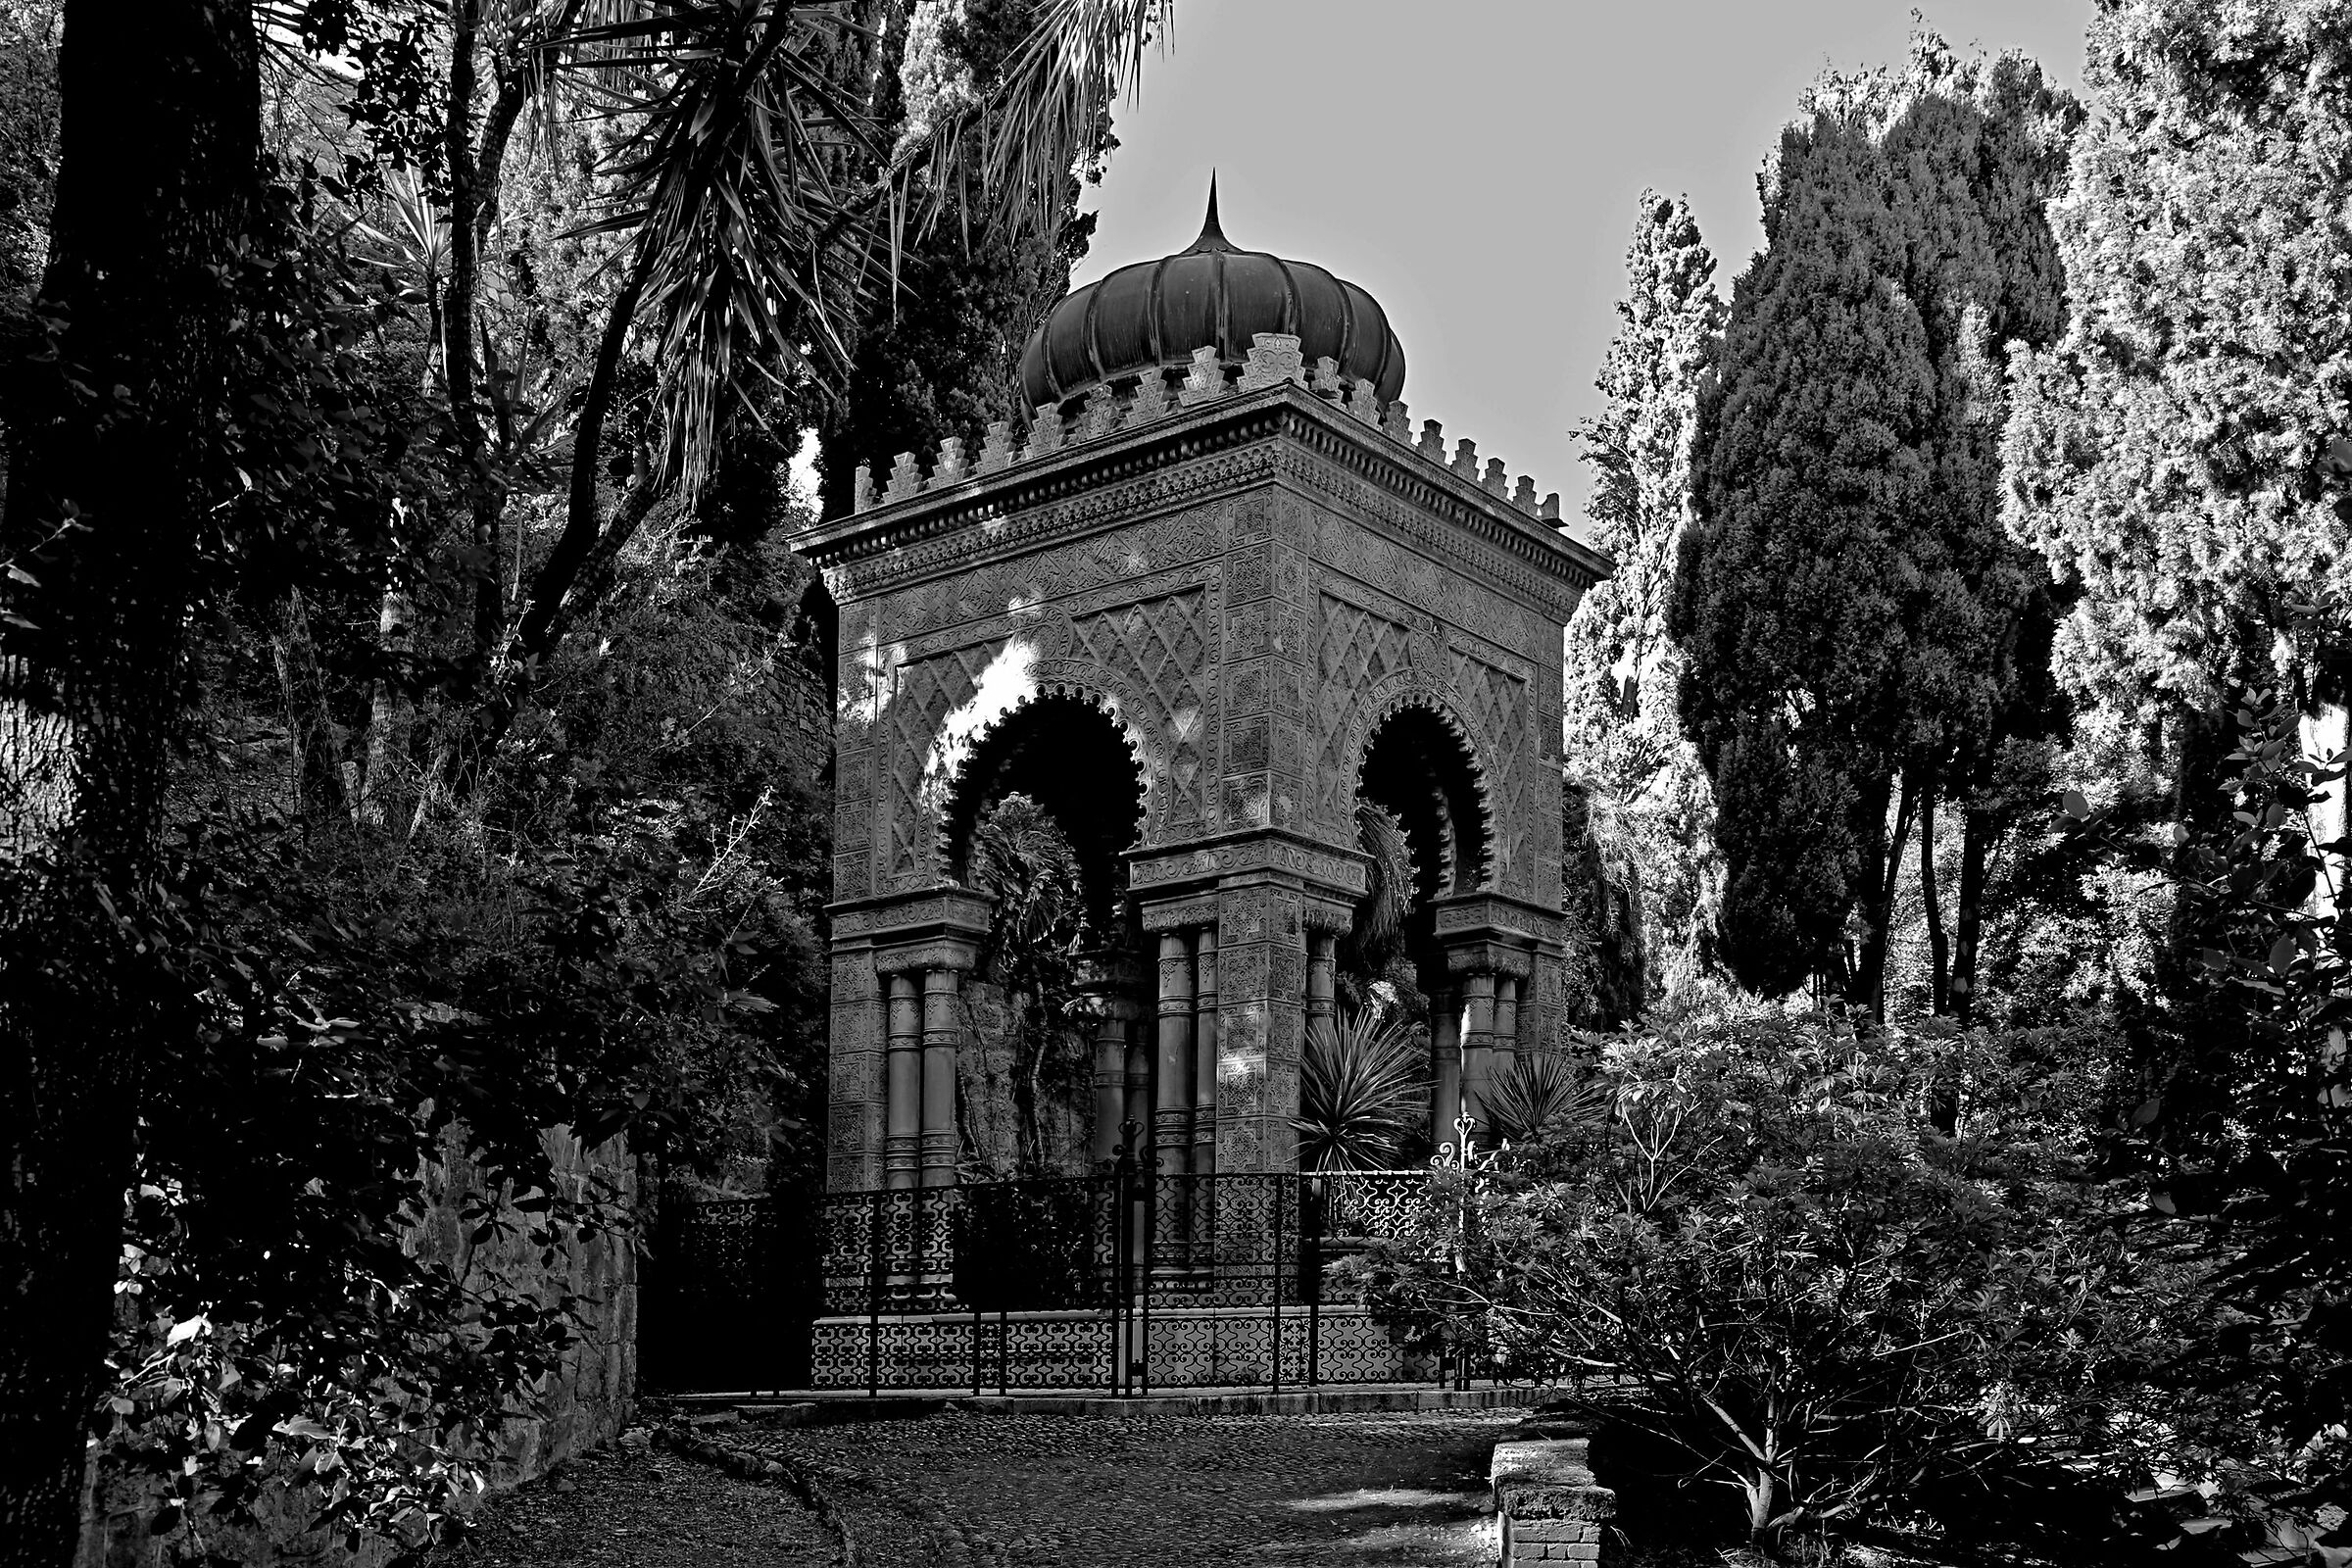 The Moresco Mausoleum...